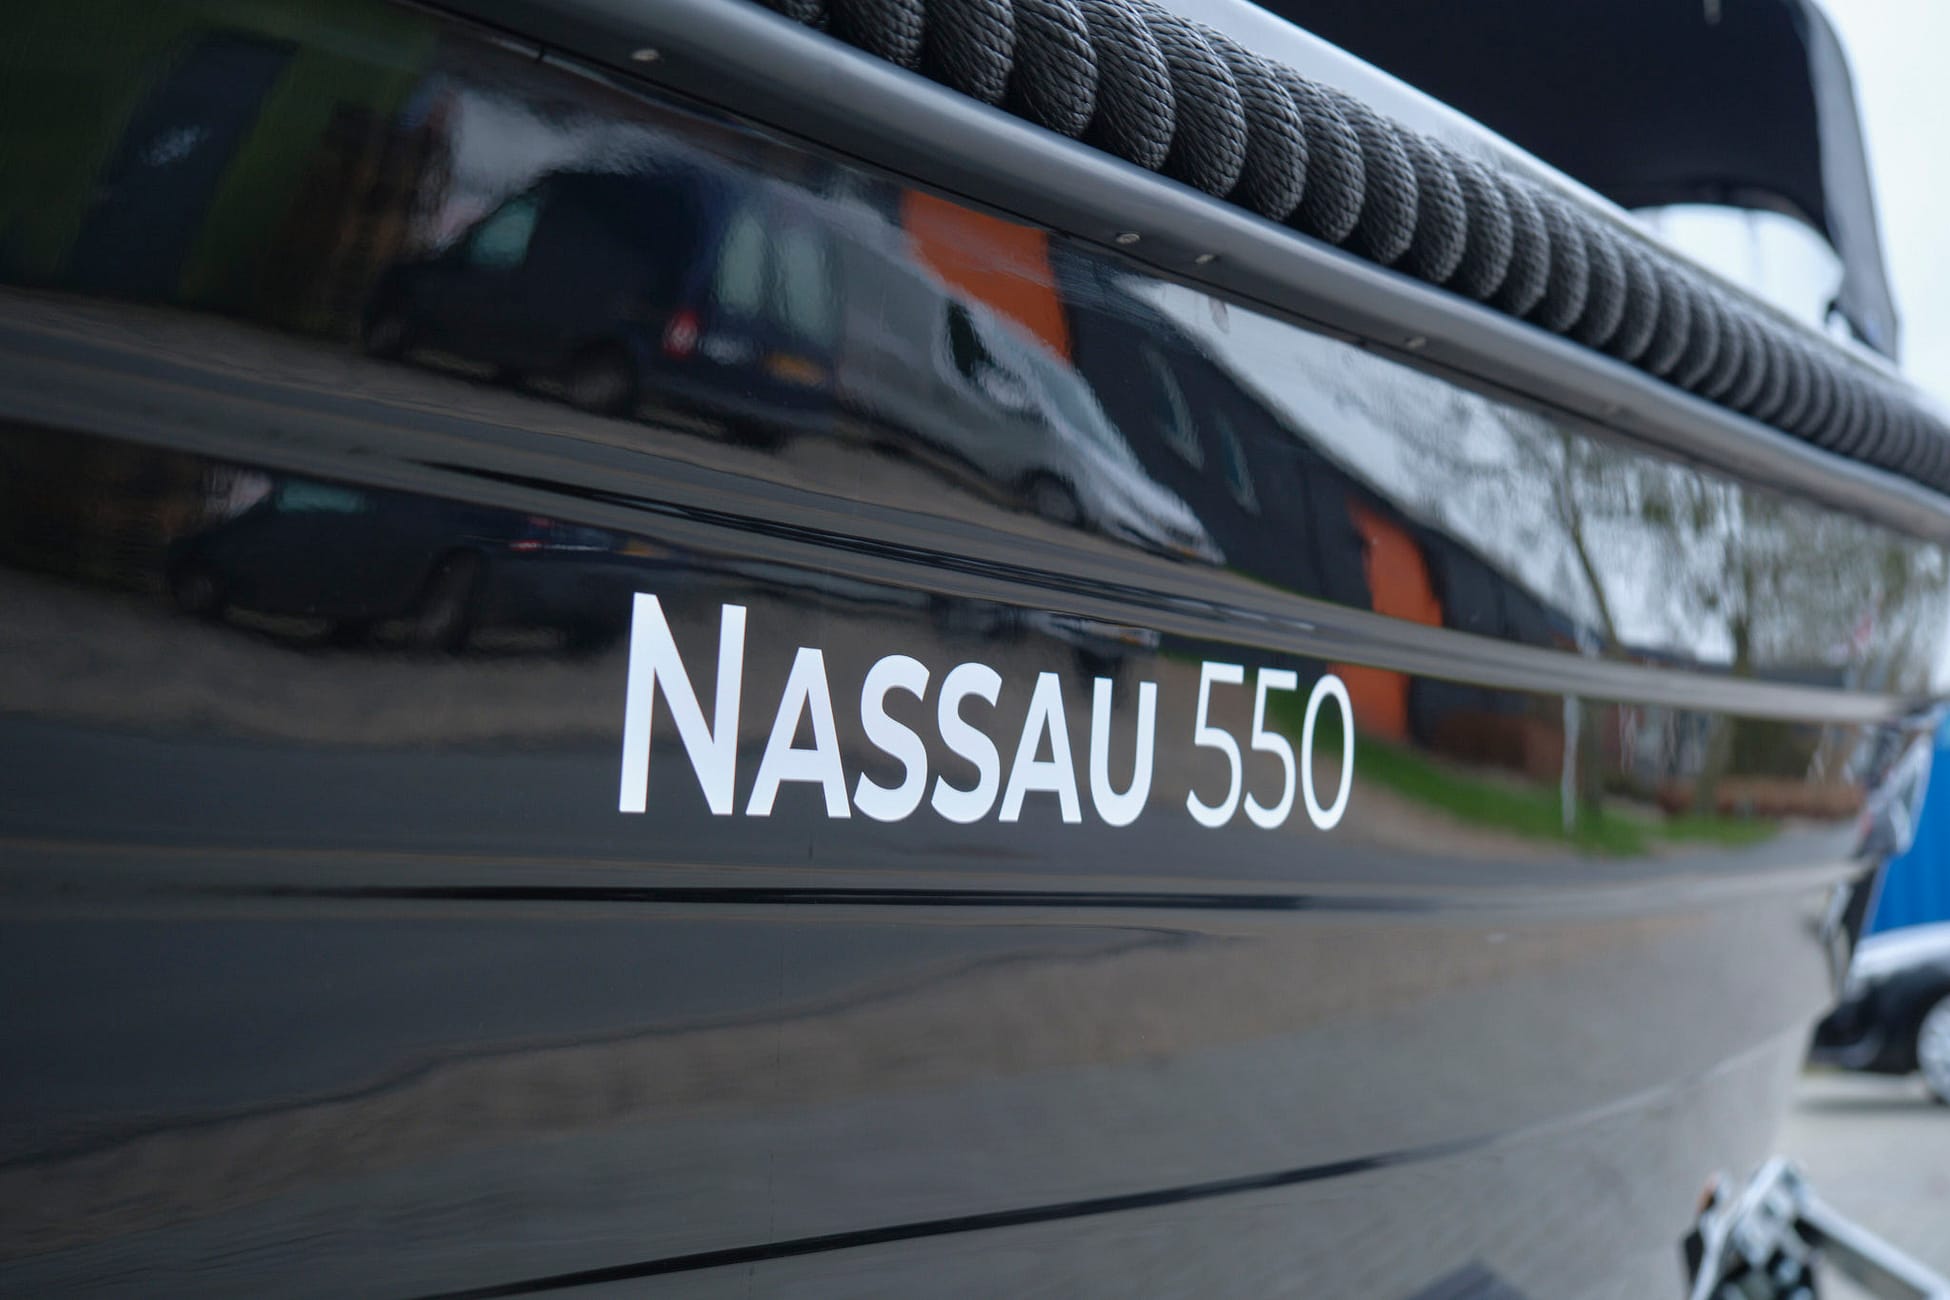 Nassau 550